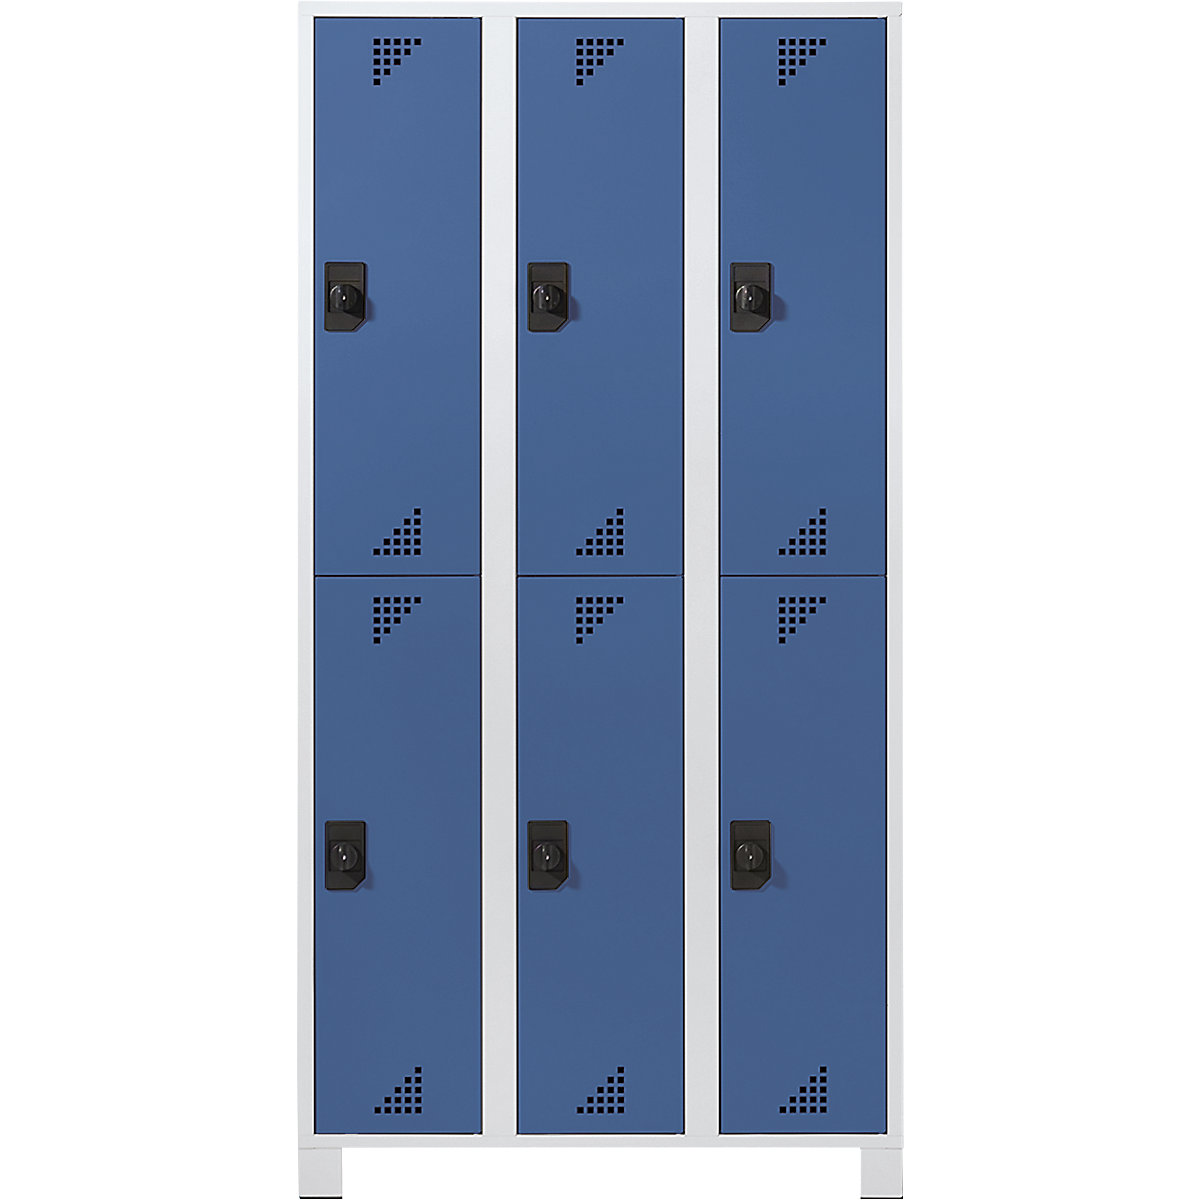 Öltözőszekrény félmagasságú rekeszekkel – eurokraft pro, ma x szé x mé 1800 x 1200 x 500 mm, 6 fülke, világosszürke váz, ragyogó kék ajtók-6